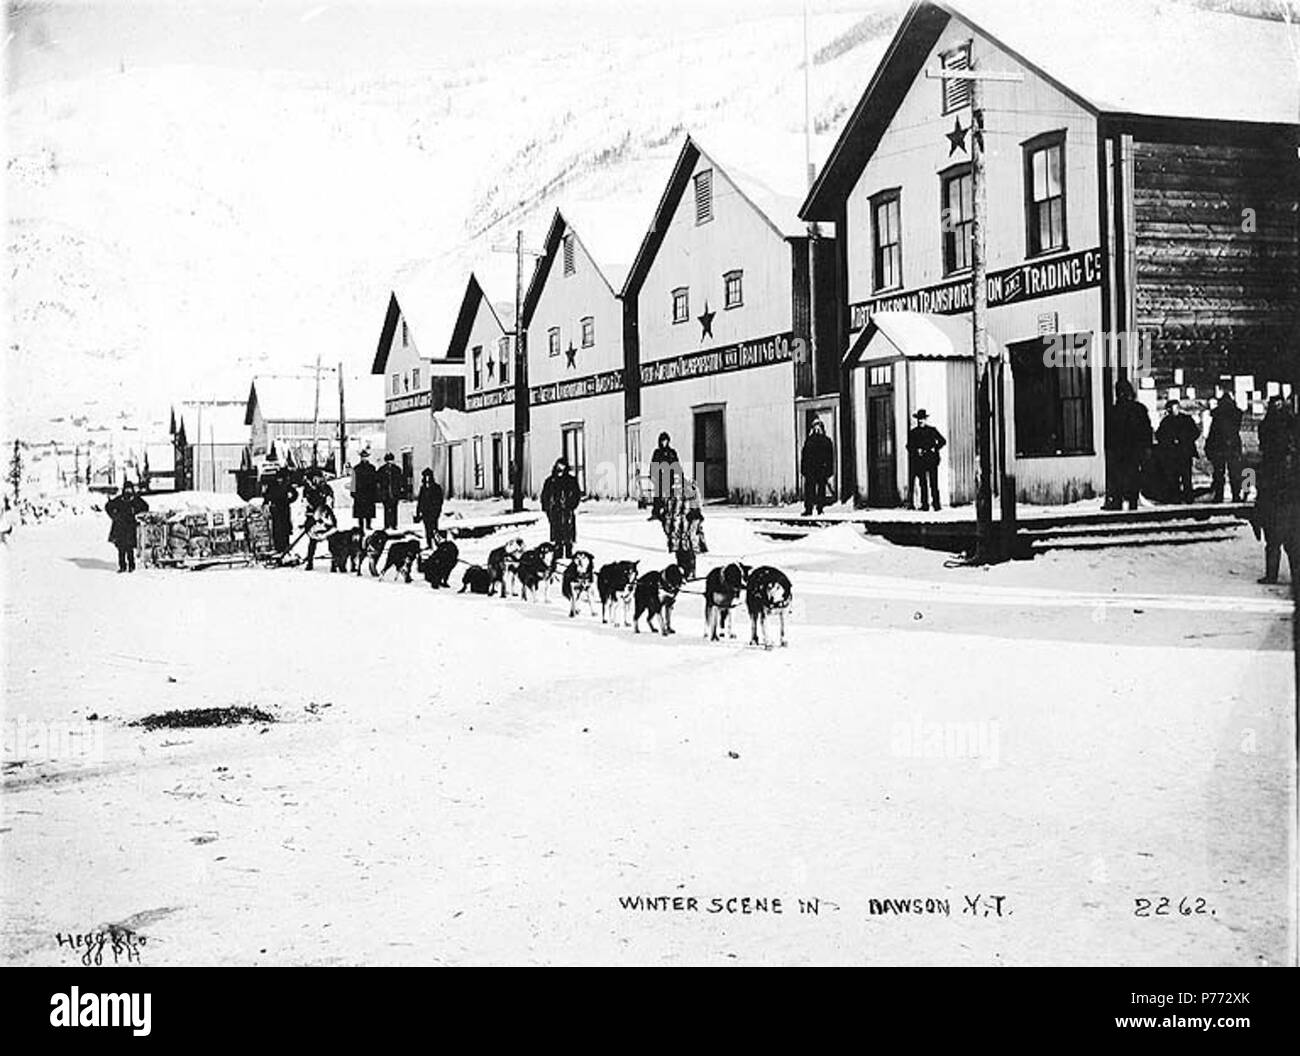 . Englisch: Hundeschlitten team Lebensmittel Lieferungen außerhalb der Nordamerikanischen Transport und Trading Co. Büros, Dawson City, Yukon Territory, Ca. 1899. Englisch: Legende zum Bild: 'Winter Szene in DawsonY.T.'. Klondike Gold Rush. Themen (LCTGM): Hund Mannschaften - Yukon - Dawson; Schlitten & Schlitten - Yukon - Dawson; Straßen---- Yukon Dawson; Büros ------ Yukon Dawson; Lager---- Yukon Dawson Themen (LCSH): Dawson (Yukon); North American Transport- und Handelsgesellschaft. ca. 1899 3 Hundeschlitten team Lebensmittel Lieferungen außerhalb der Nordamerikanischen Transport und Handel Co Büros, Dawson City, Yukon Territo Stockfoto